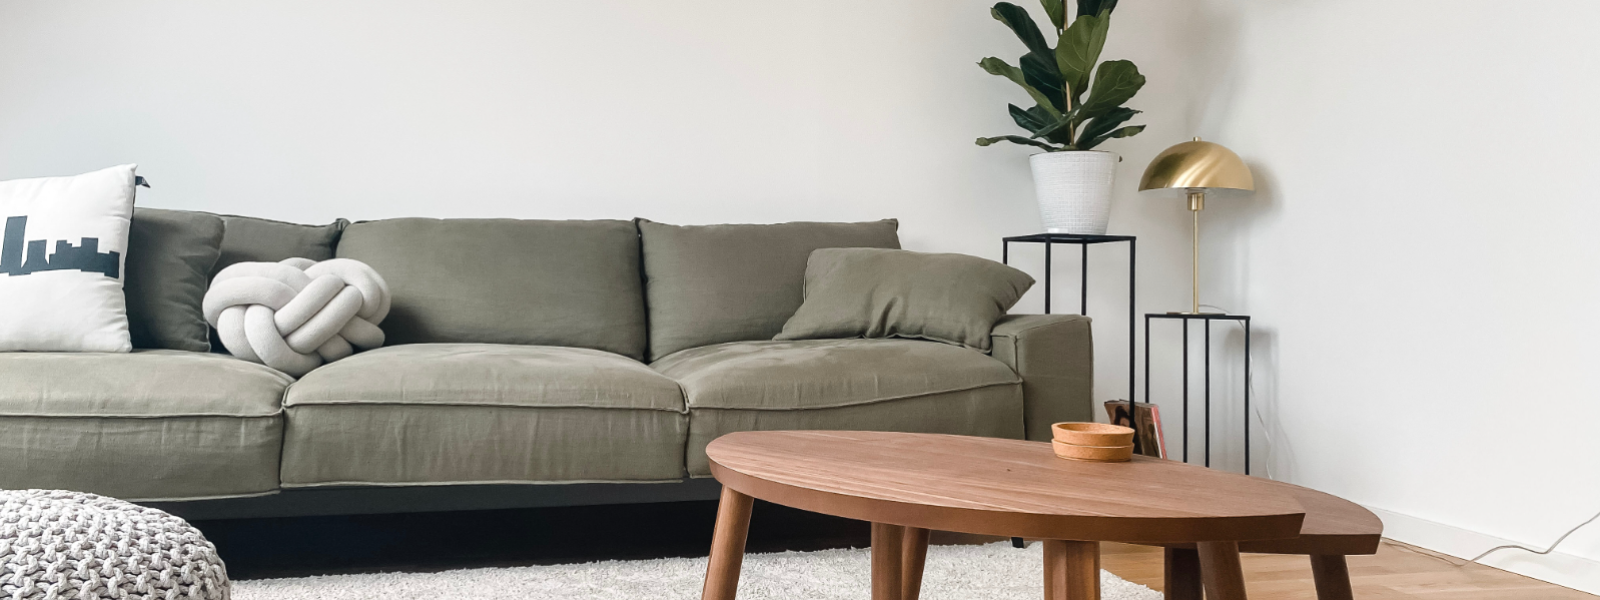 DI SOHVA OÜ - Ettevõte DI sohva OÜ valmistab eritellimusel pehmet mööblit, diivaneid ja voodeid, et muuta sinu kodu v...